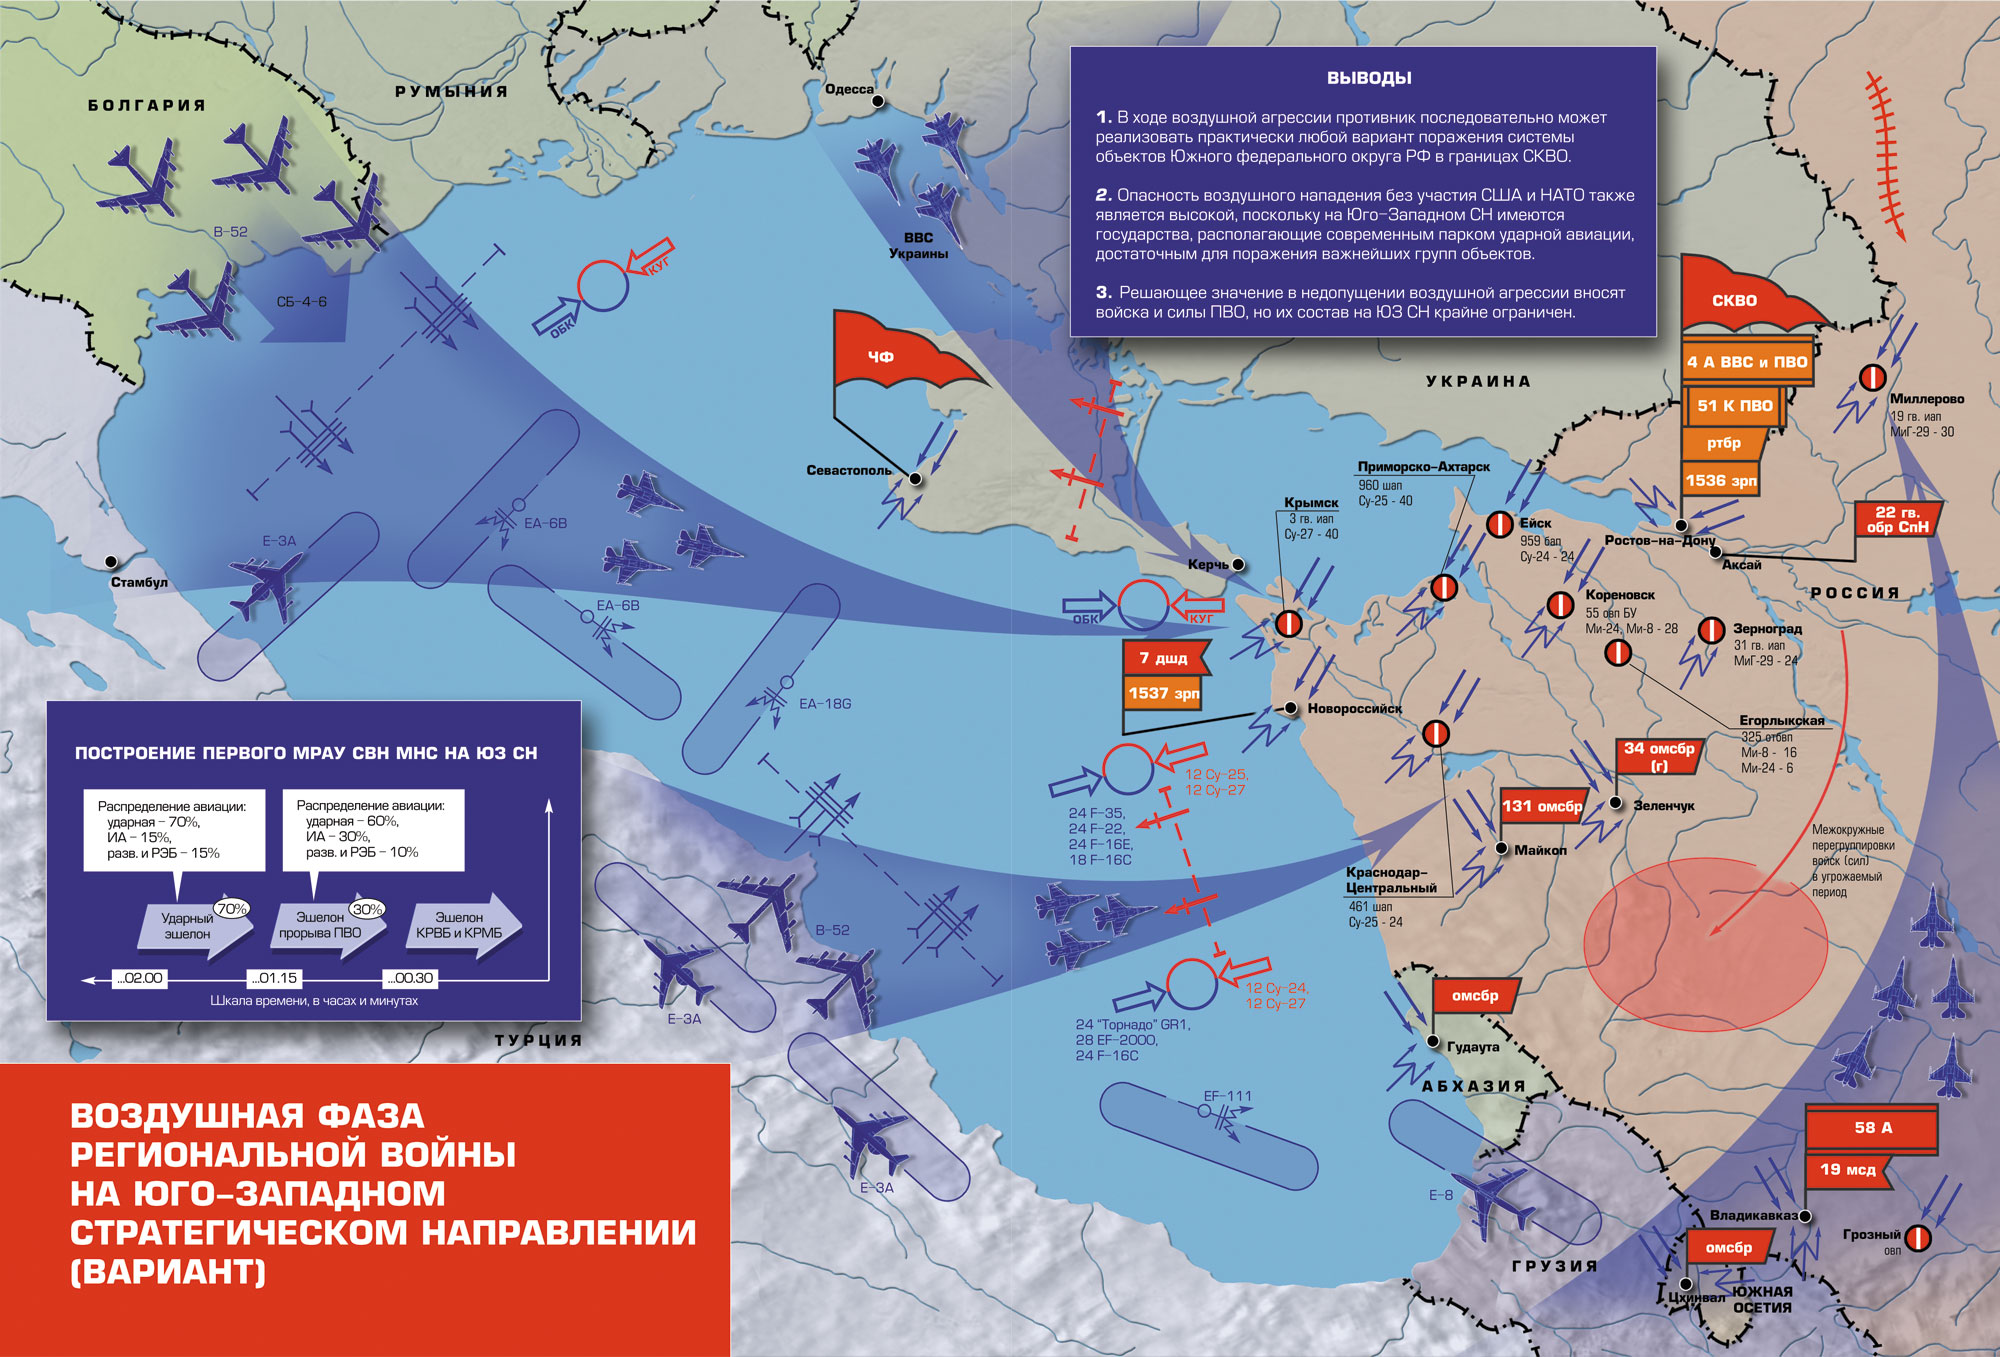 Возможный сценарий нападения на россию. ПВО НАТО на карте. Военные стратегические направления. Юго-Западное стратегическое направление. Западное стратегическое направление России.